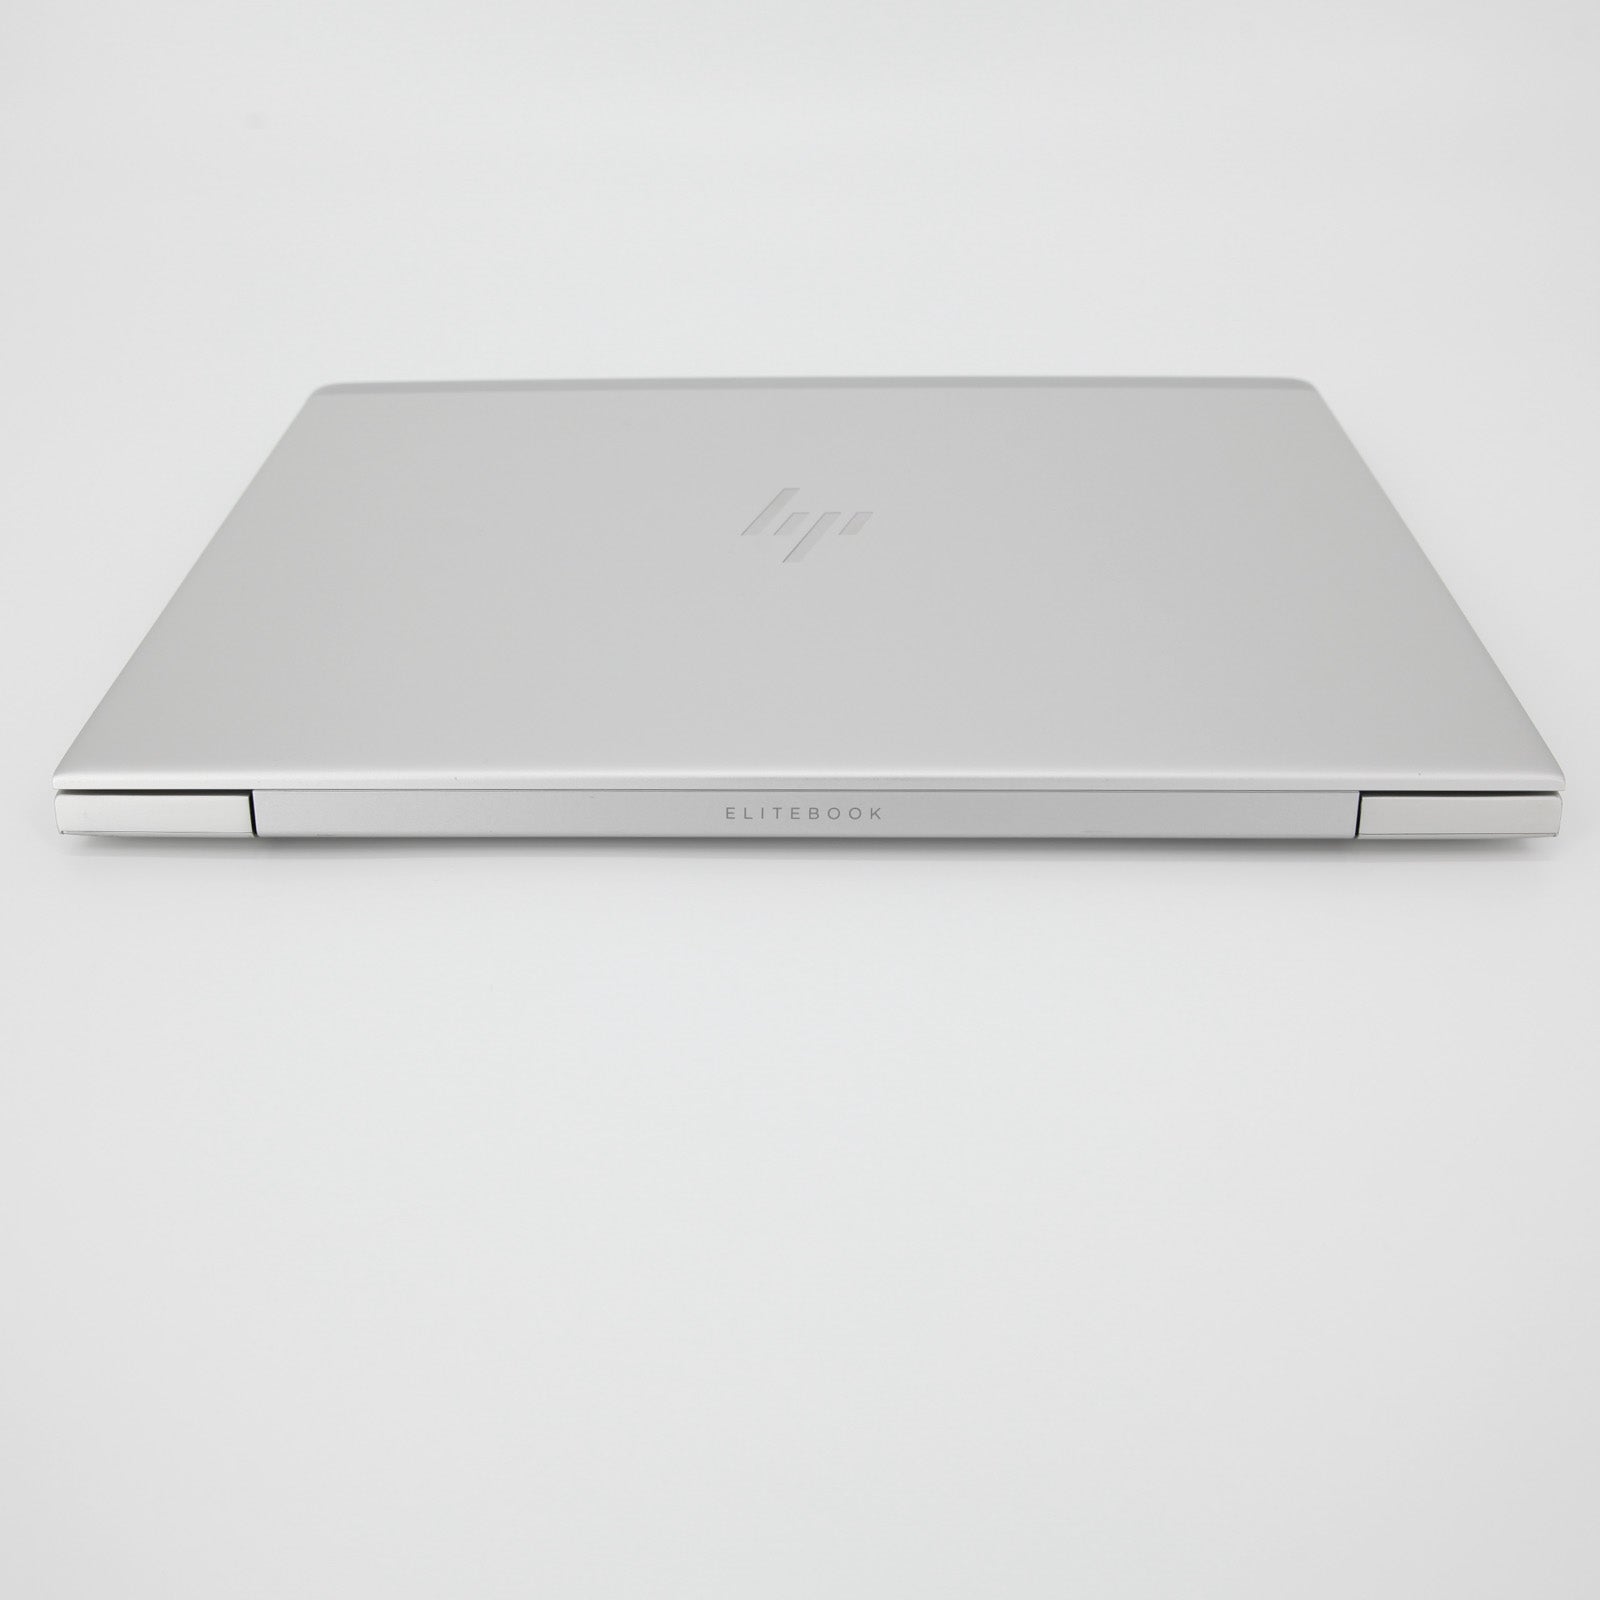 HP EliteBook 830 G6 Privacy Laptop: Core i7 8th Gen, 16GB RAM, 1TB SSD,  Warranty